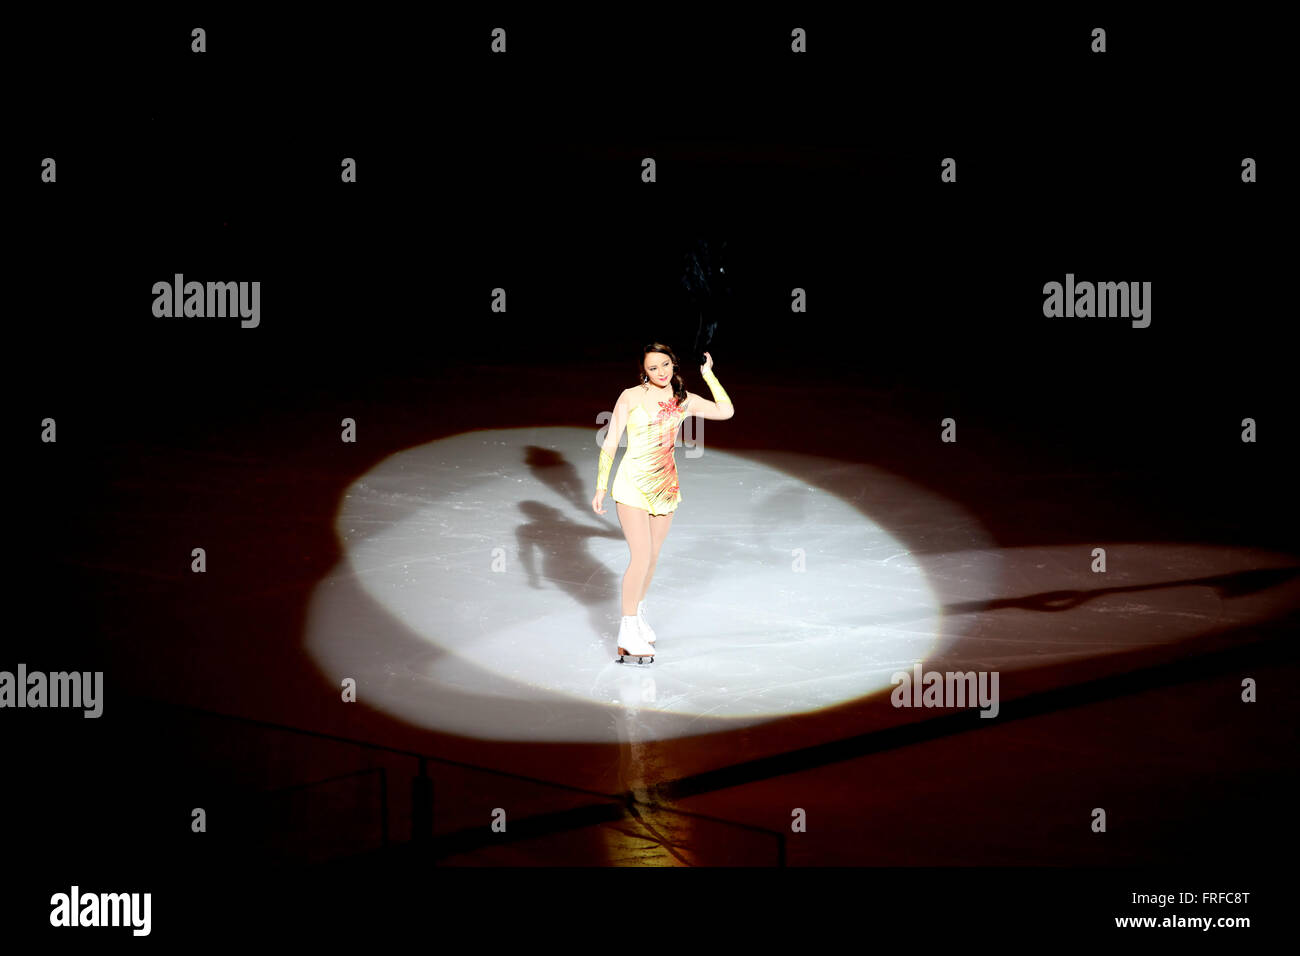 Weibliche Eis-Skater durchführen. Stockfoto